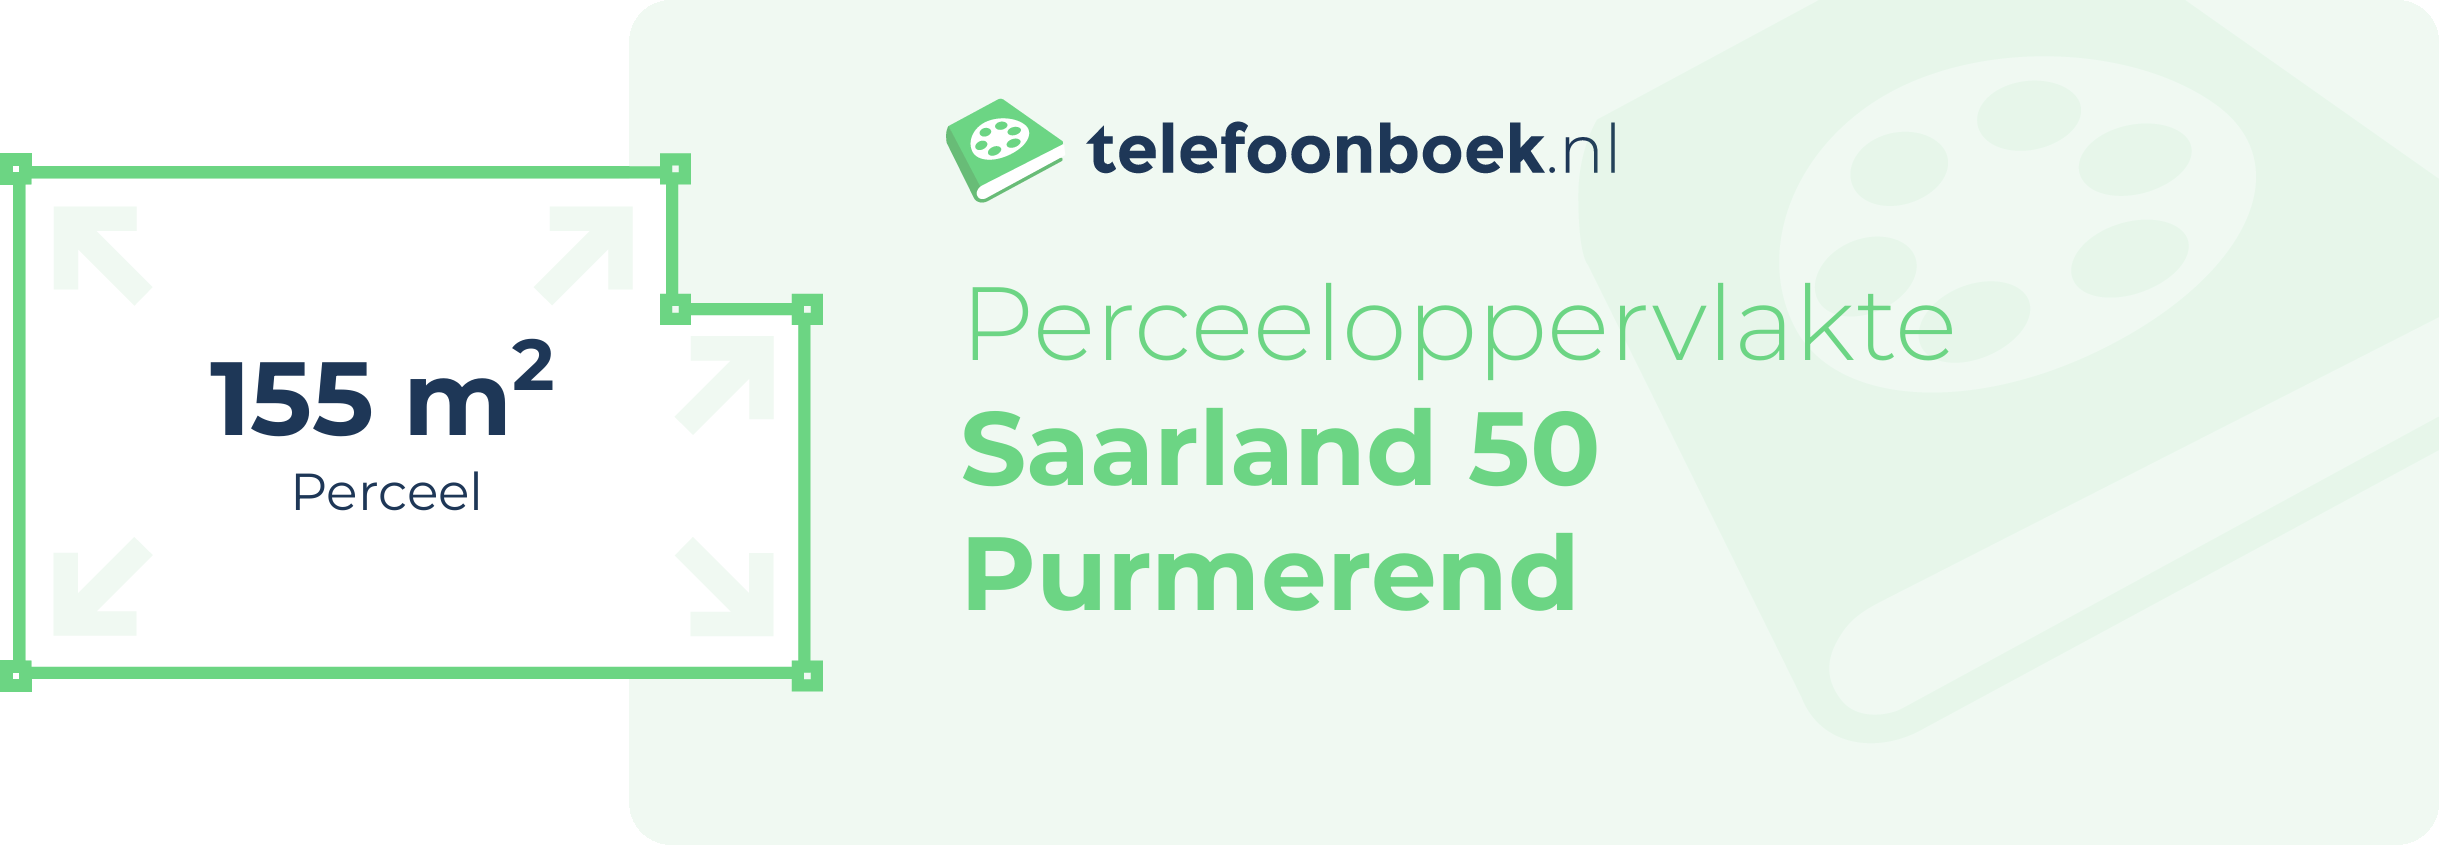 Perceeloppervlakte Saarland 50 Purmerend